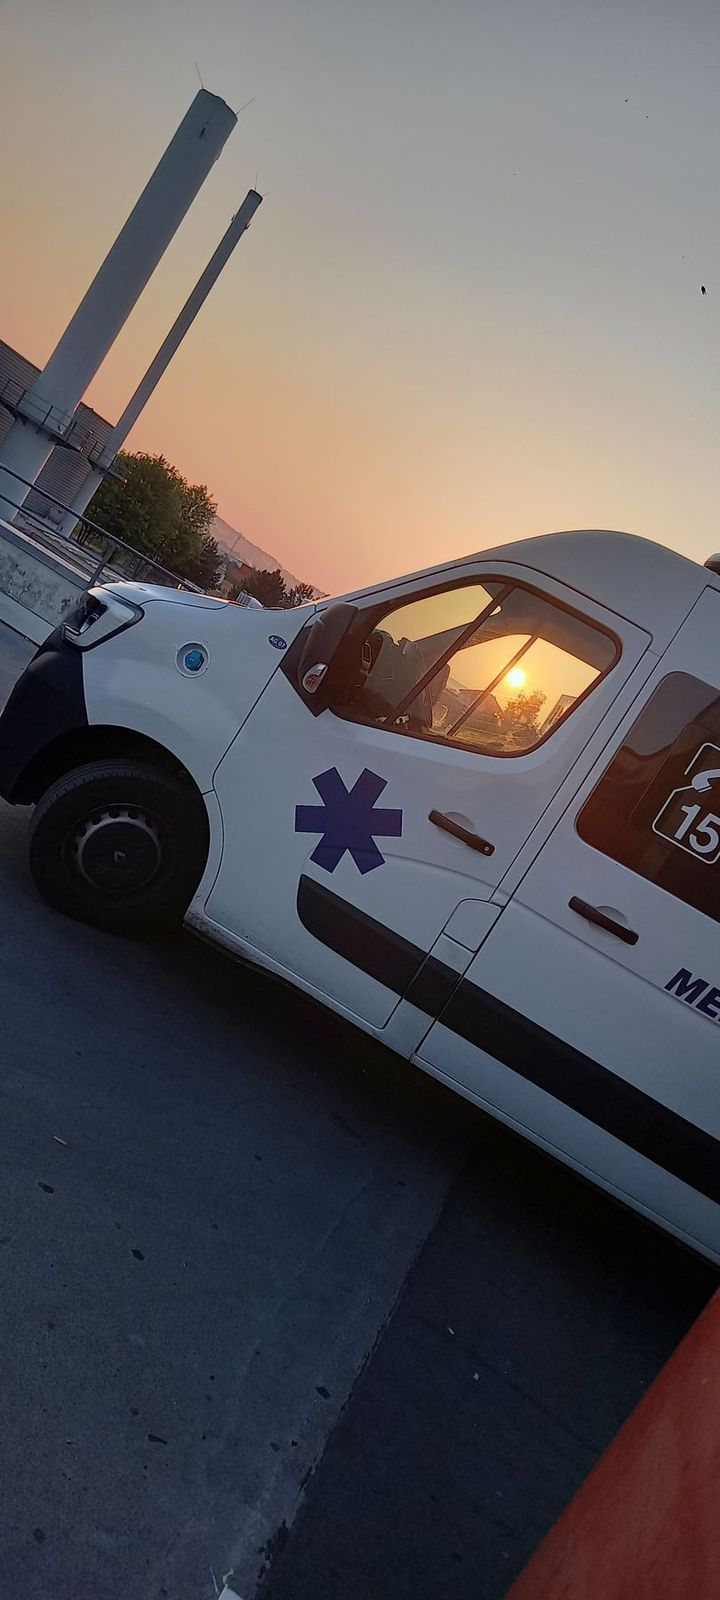 Une ambulance devant un coucher de soleil